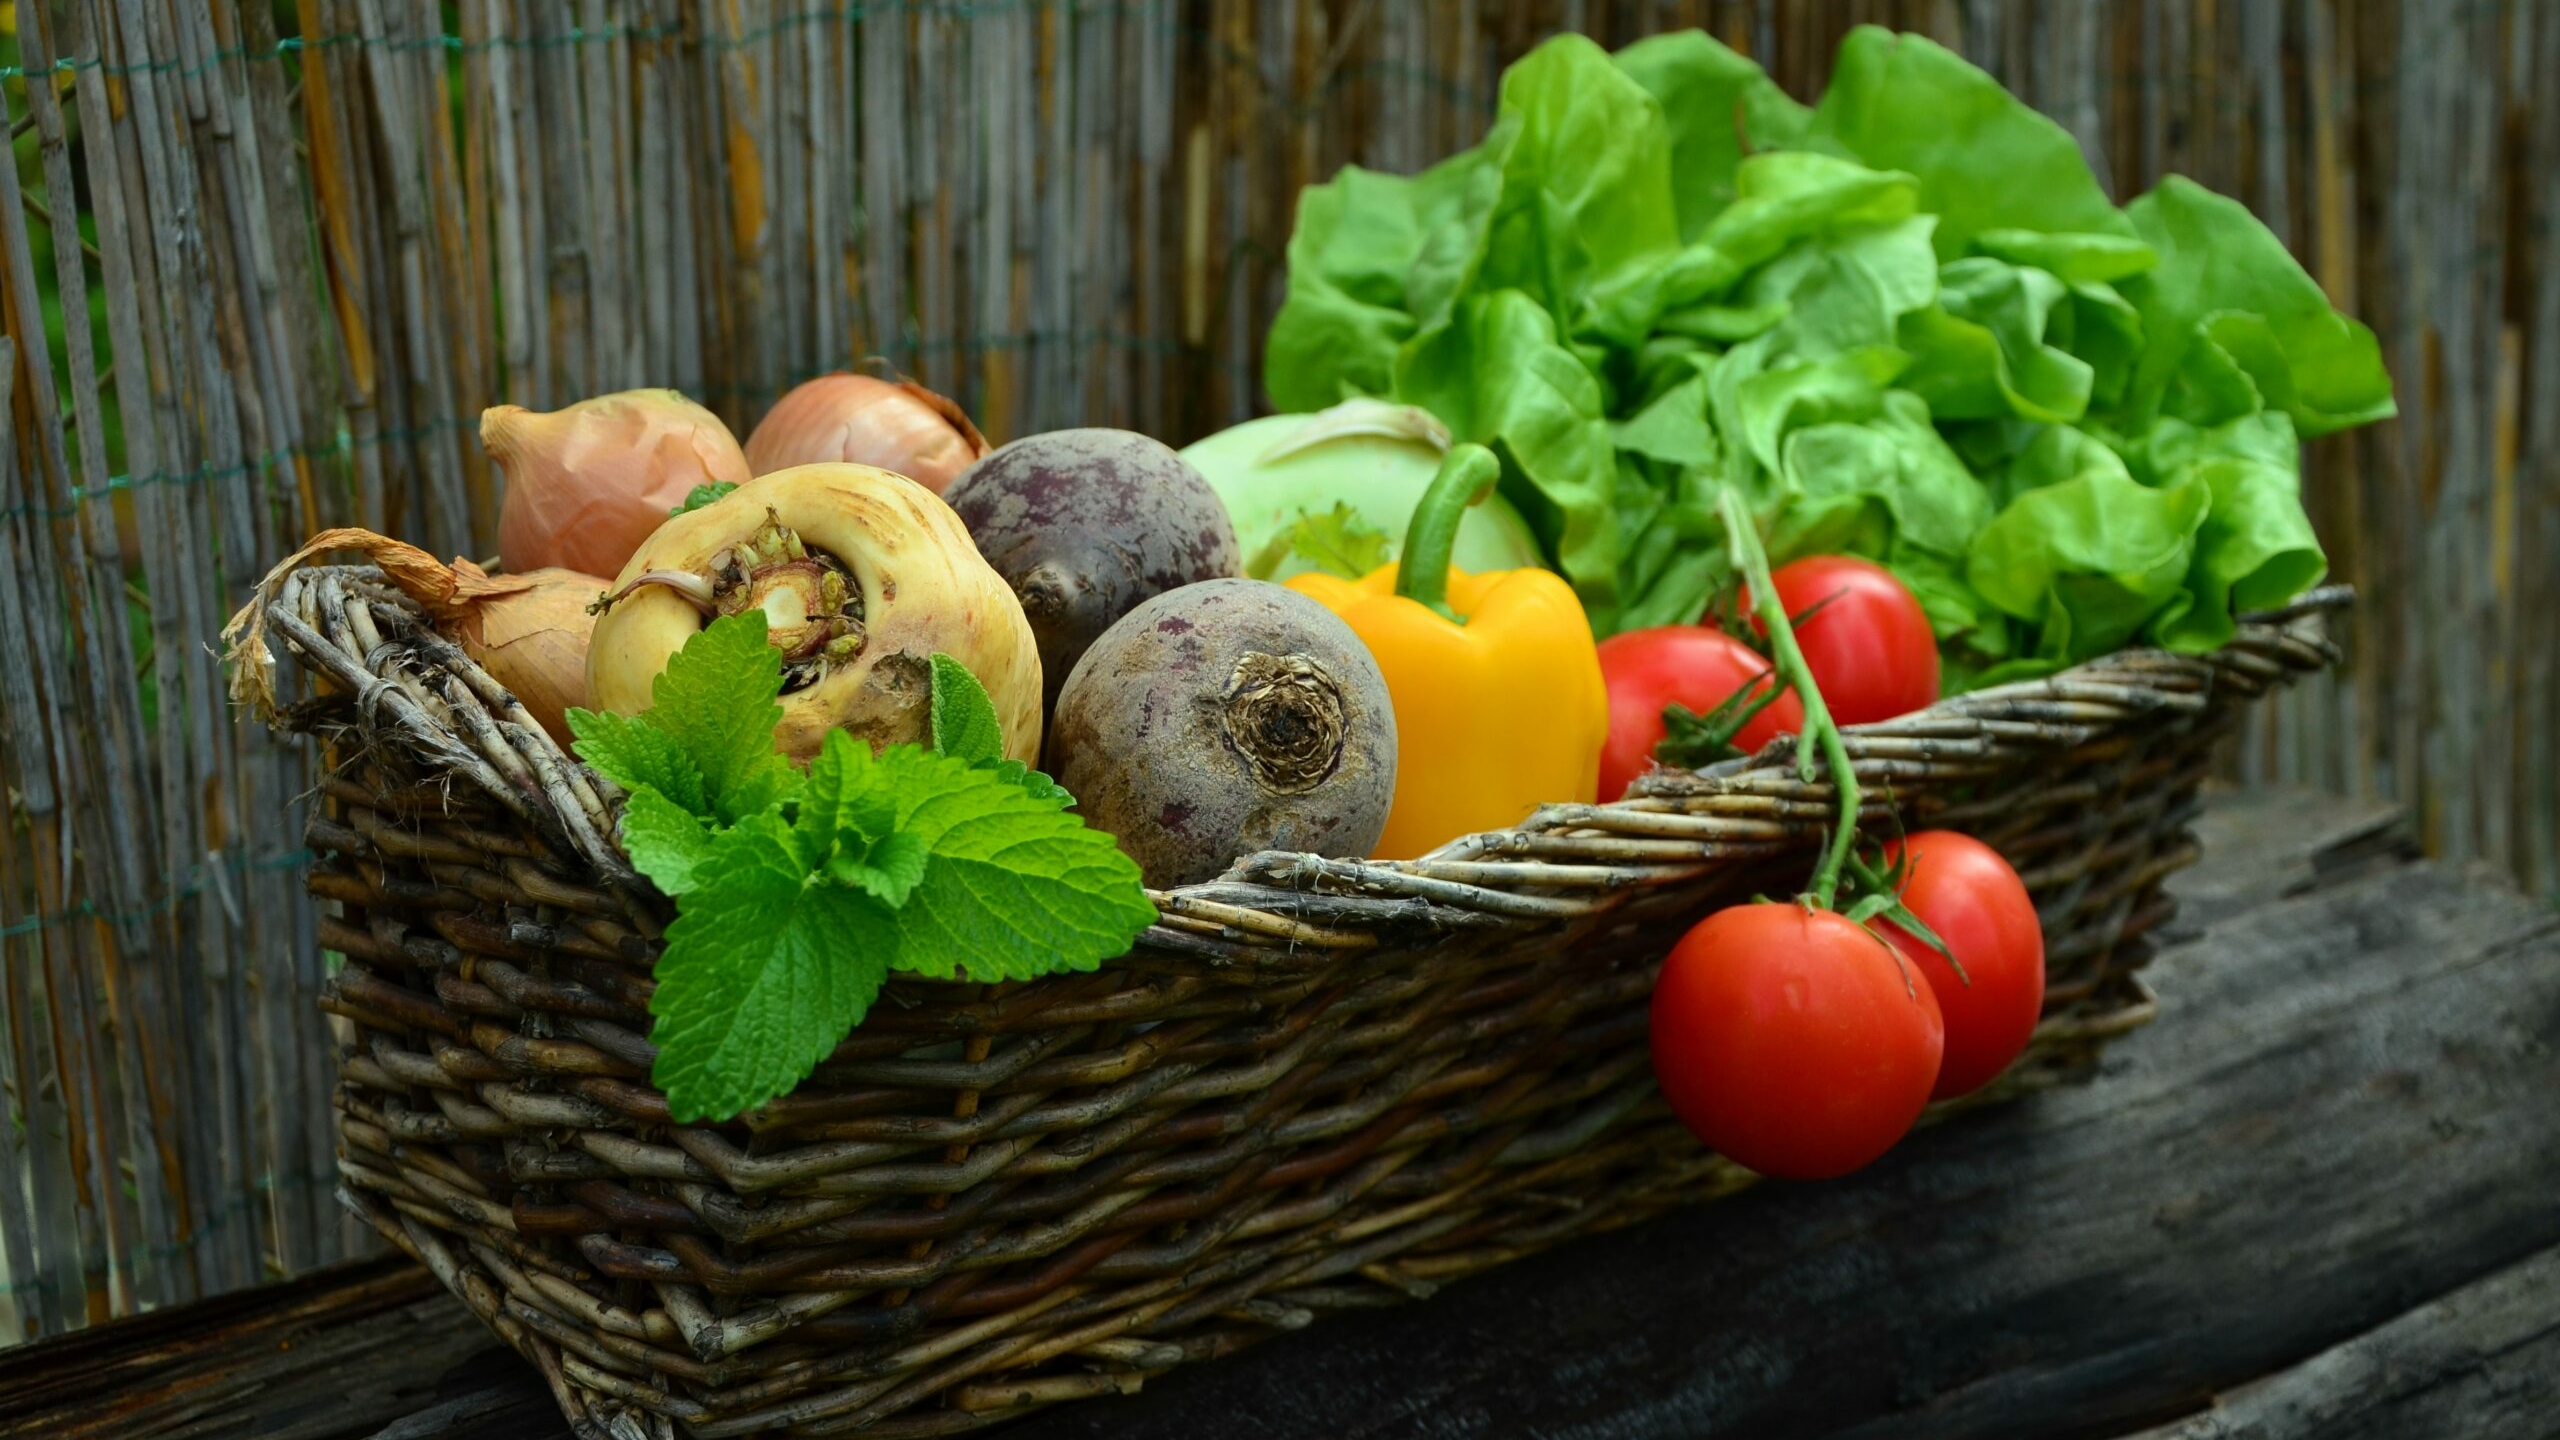 Псковский Комздрав рассказал, сколько нужно есть овощей и фруктов в день